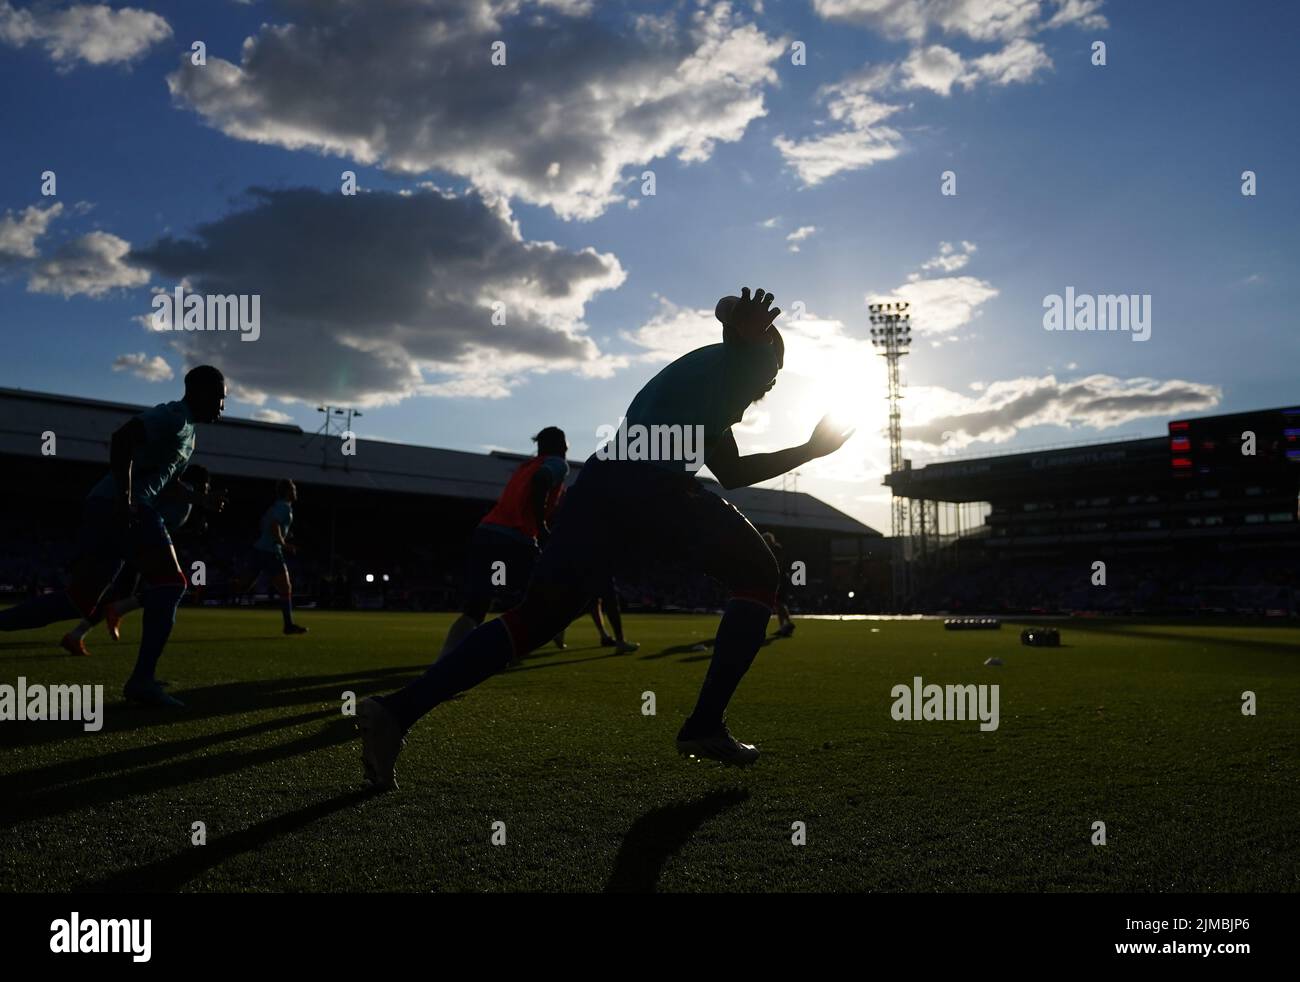 Crystal Palace se calienta antes del inicio del partido de la Premier League en Selhurst Park, Londres. Fecha de la foto: Viernes 5 de agosto de 2022. Foto de stock